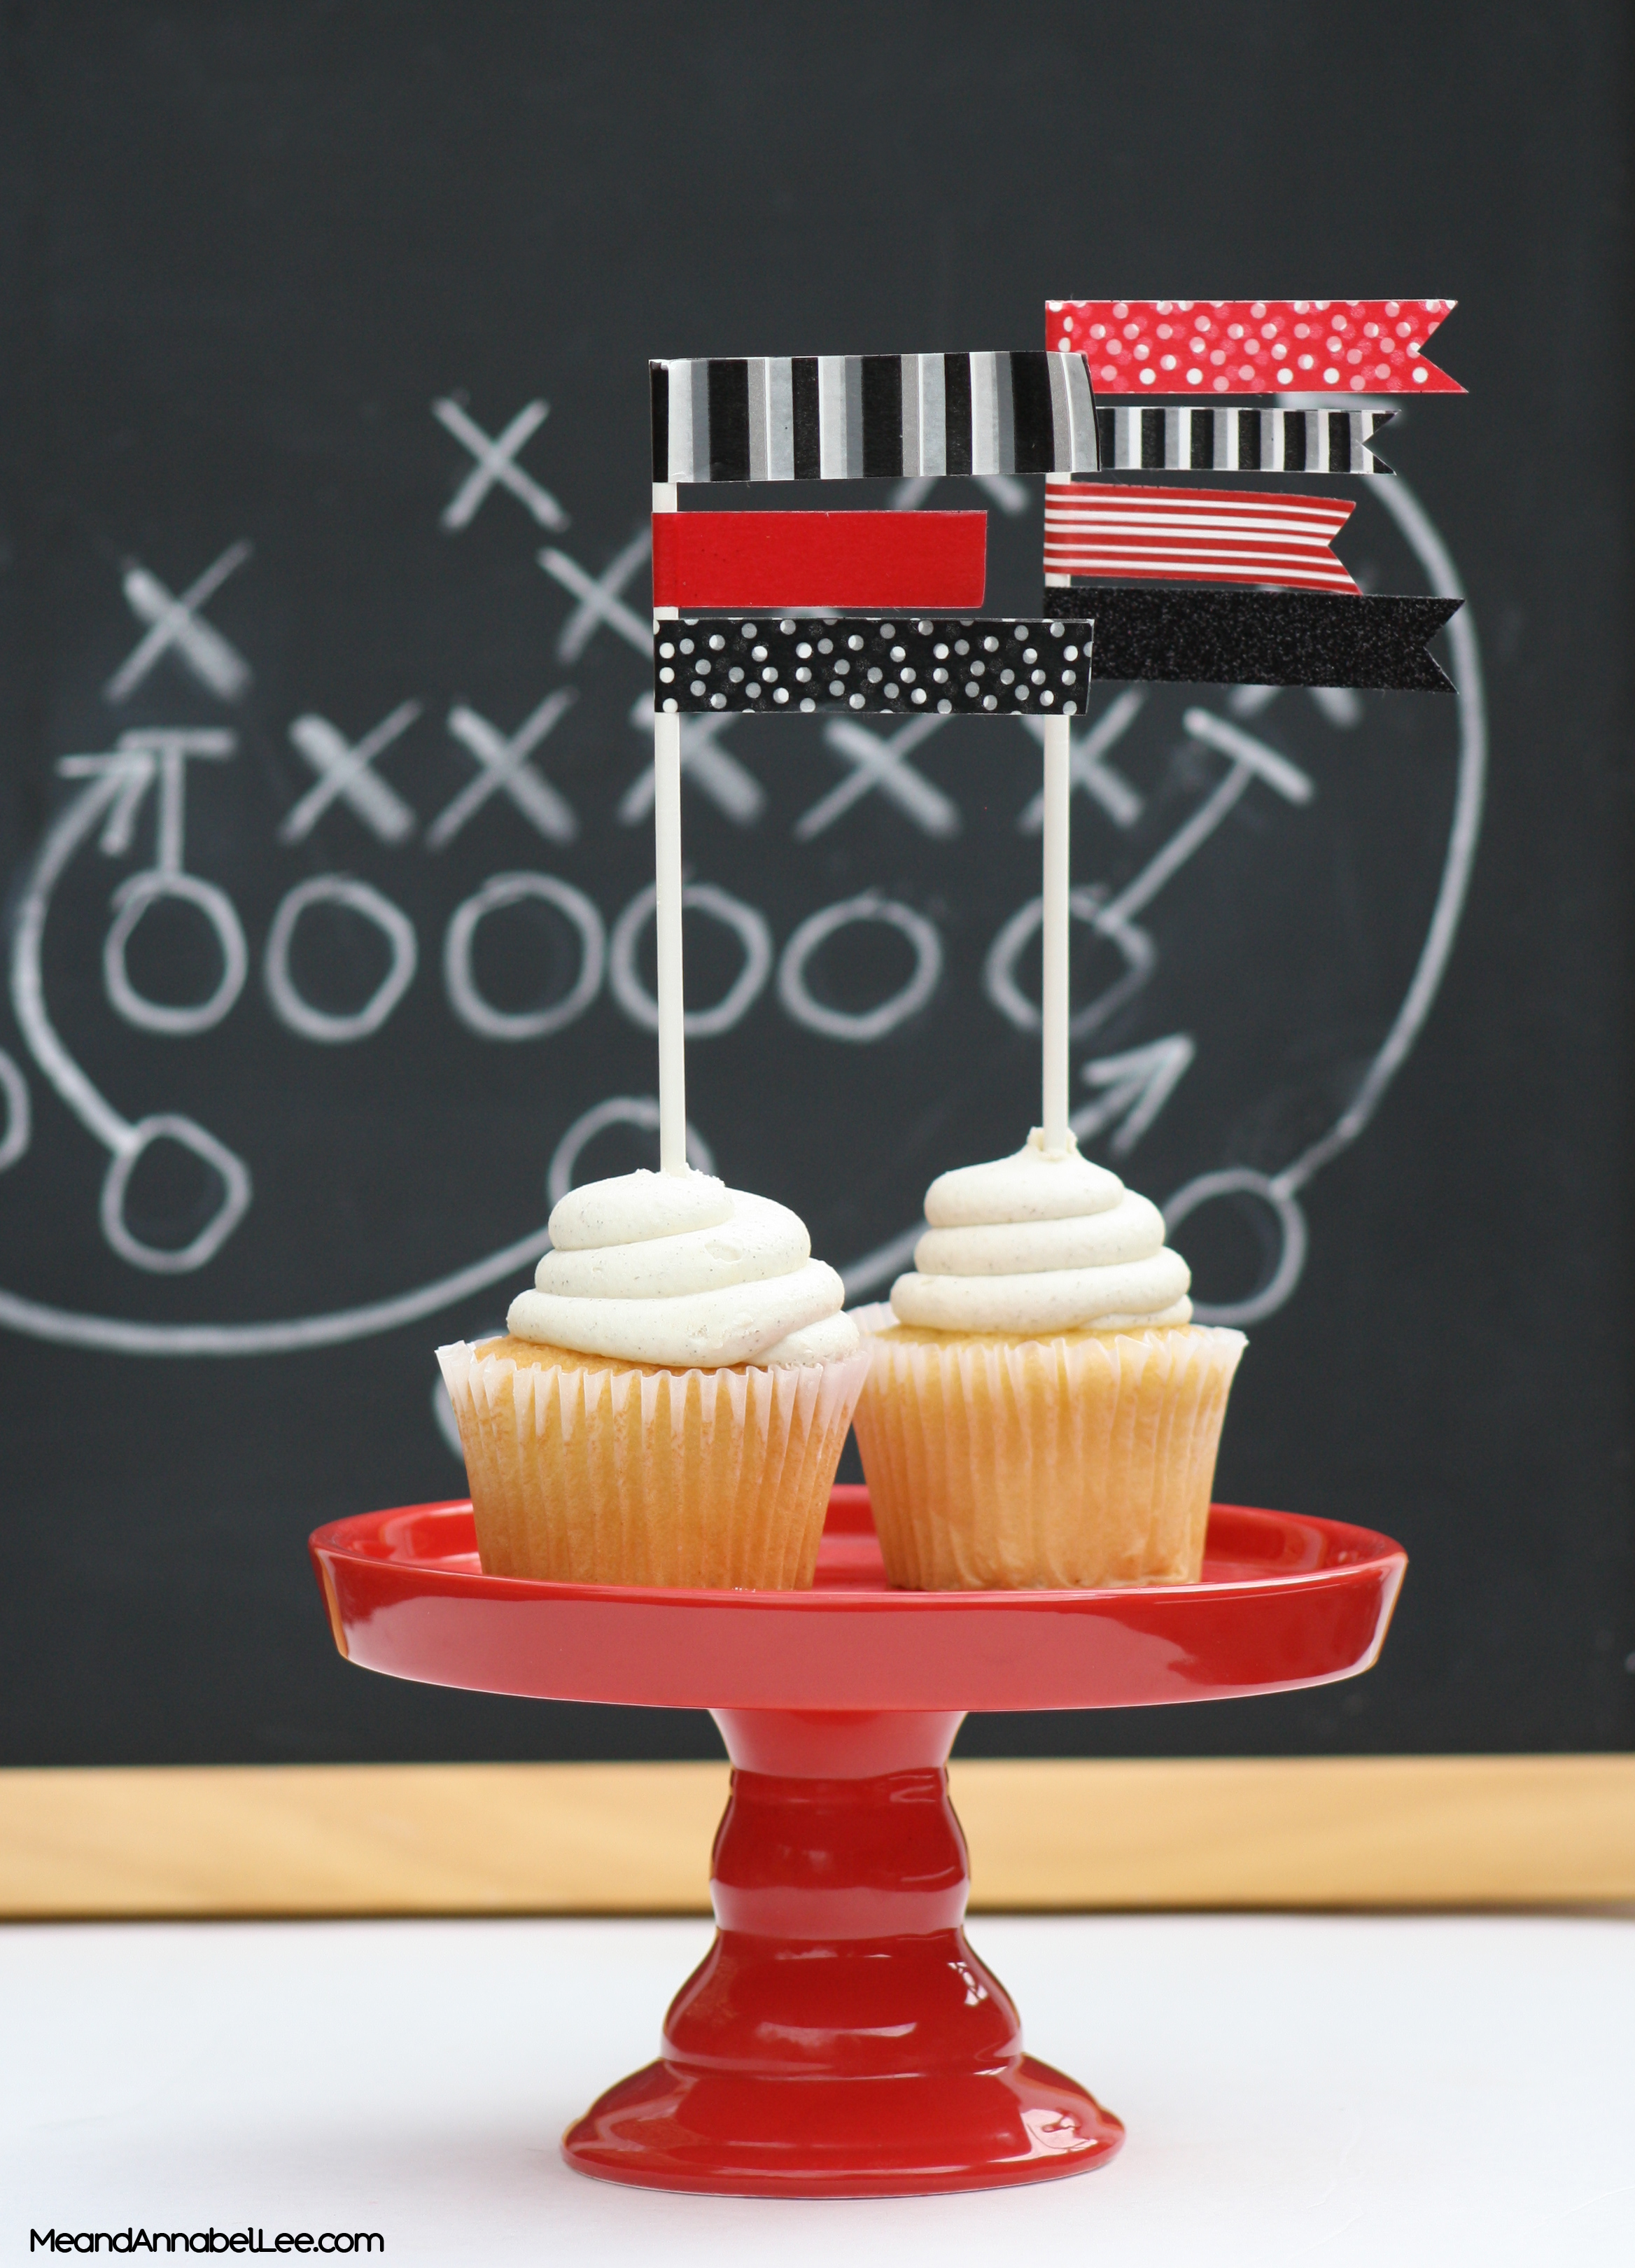 DIY Team Color Washi Flag Cupcake Topper - Atlanta Falcons vs New England Patriots - Super Bowl LI - www.MeandannabelLee.com - #superbowlparty #gameday #superbowlsunday